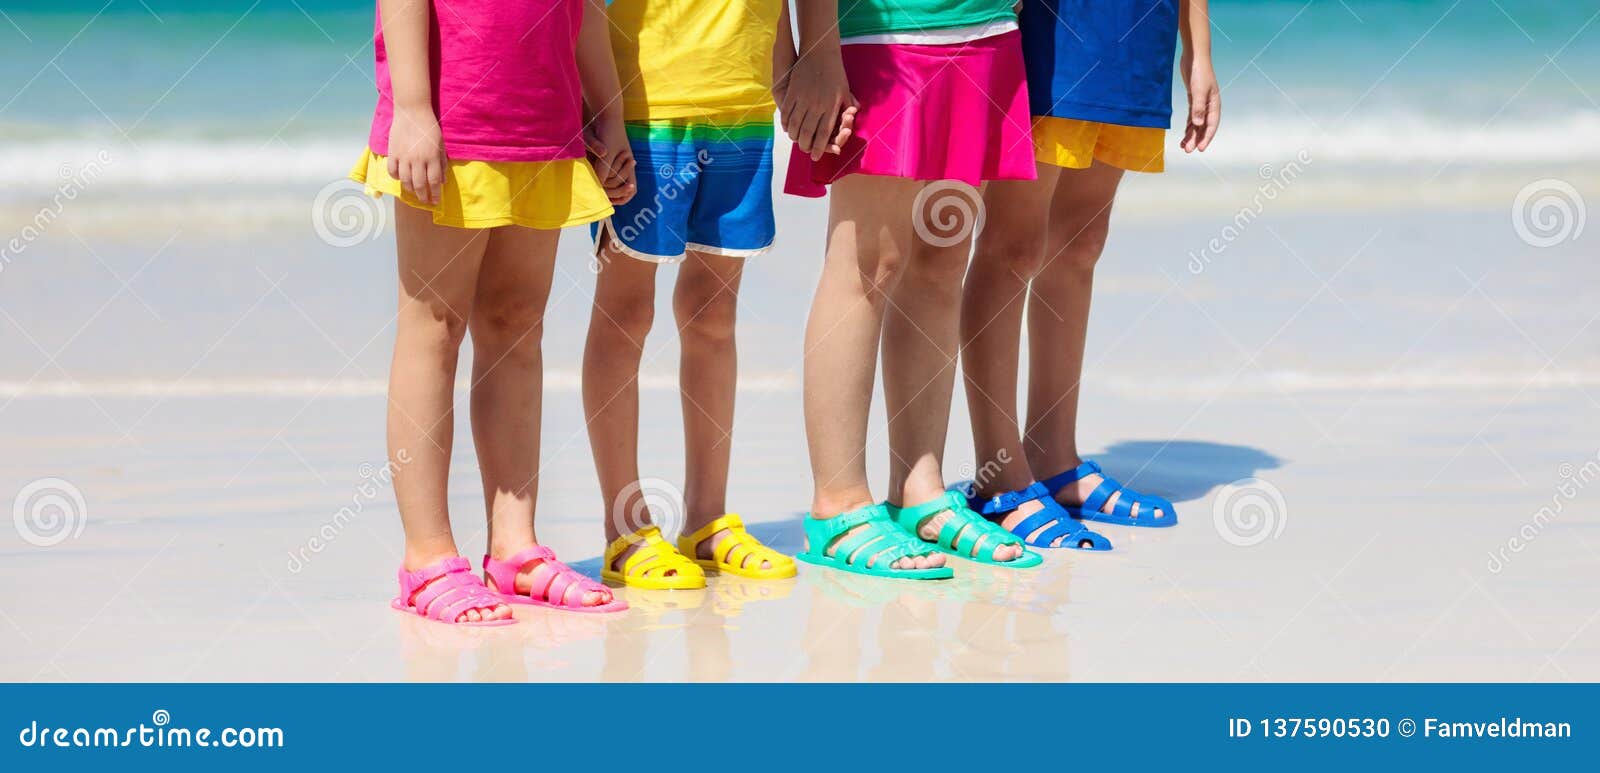 Zapatos De La Playa De Los Niños Calzado Del Mar Verano De Los Niños Foto de archivo - Imagen de arena, familia: 137590530